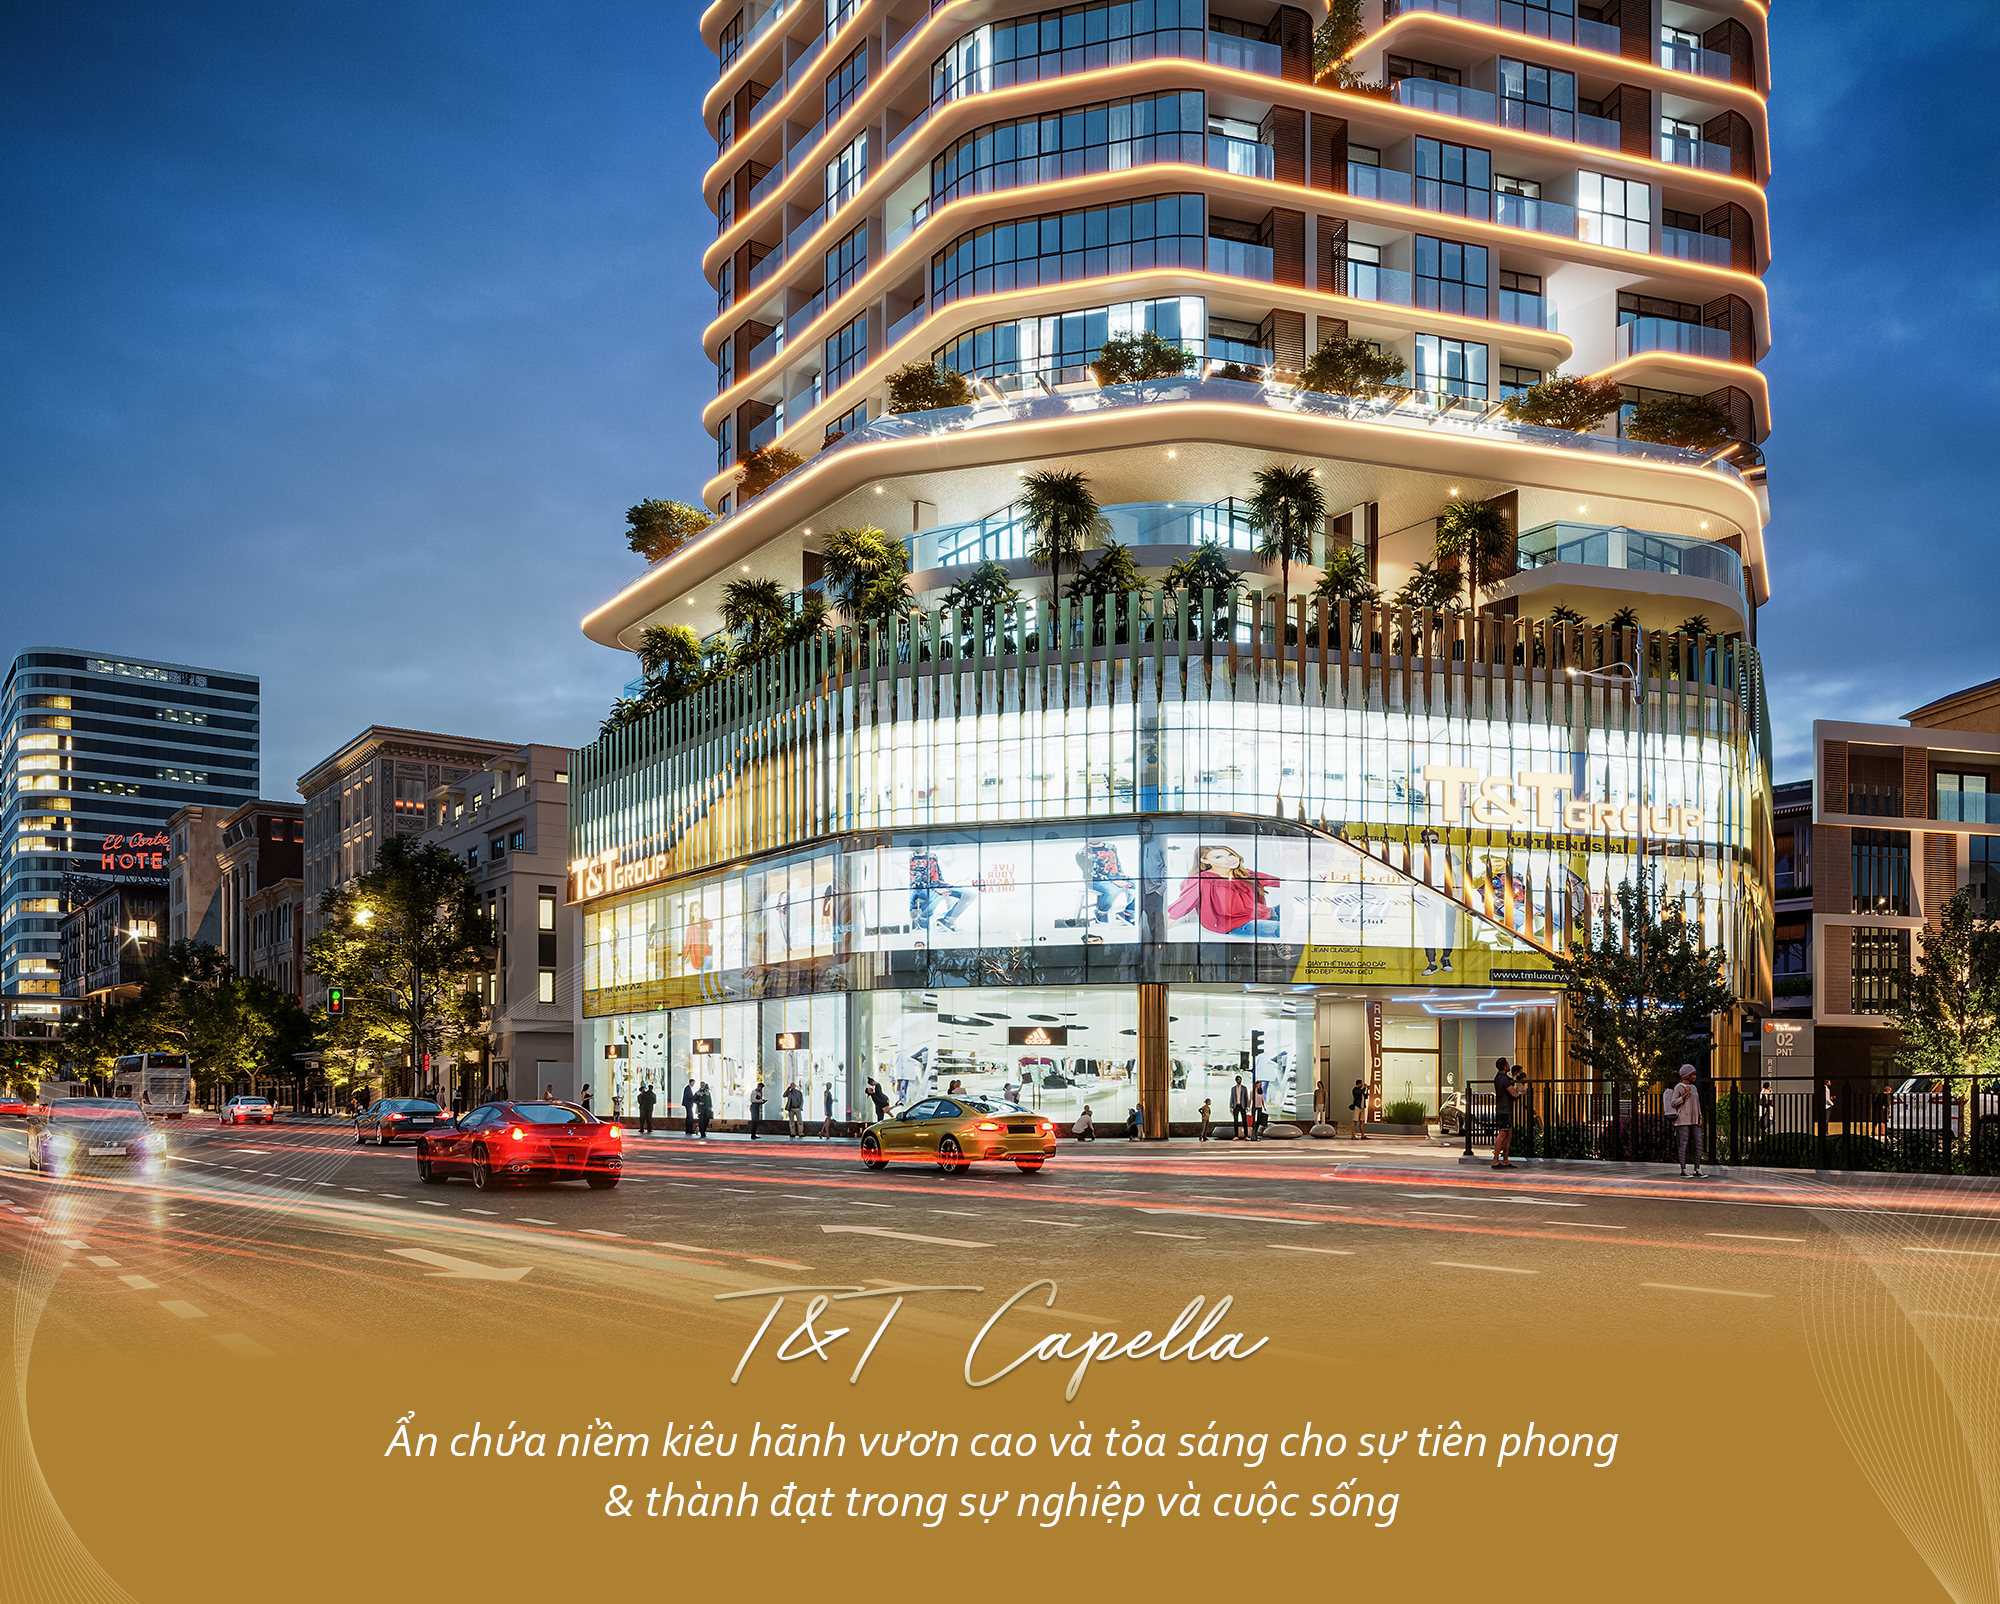 T&T Capella: Sức hấp dẫn của căn hộ 5 sao giữa trung tâm Hà Nội - Ảnh 3.